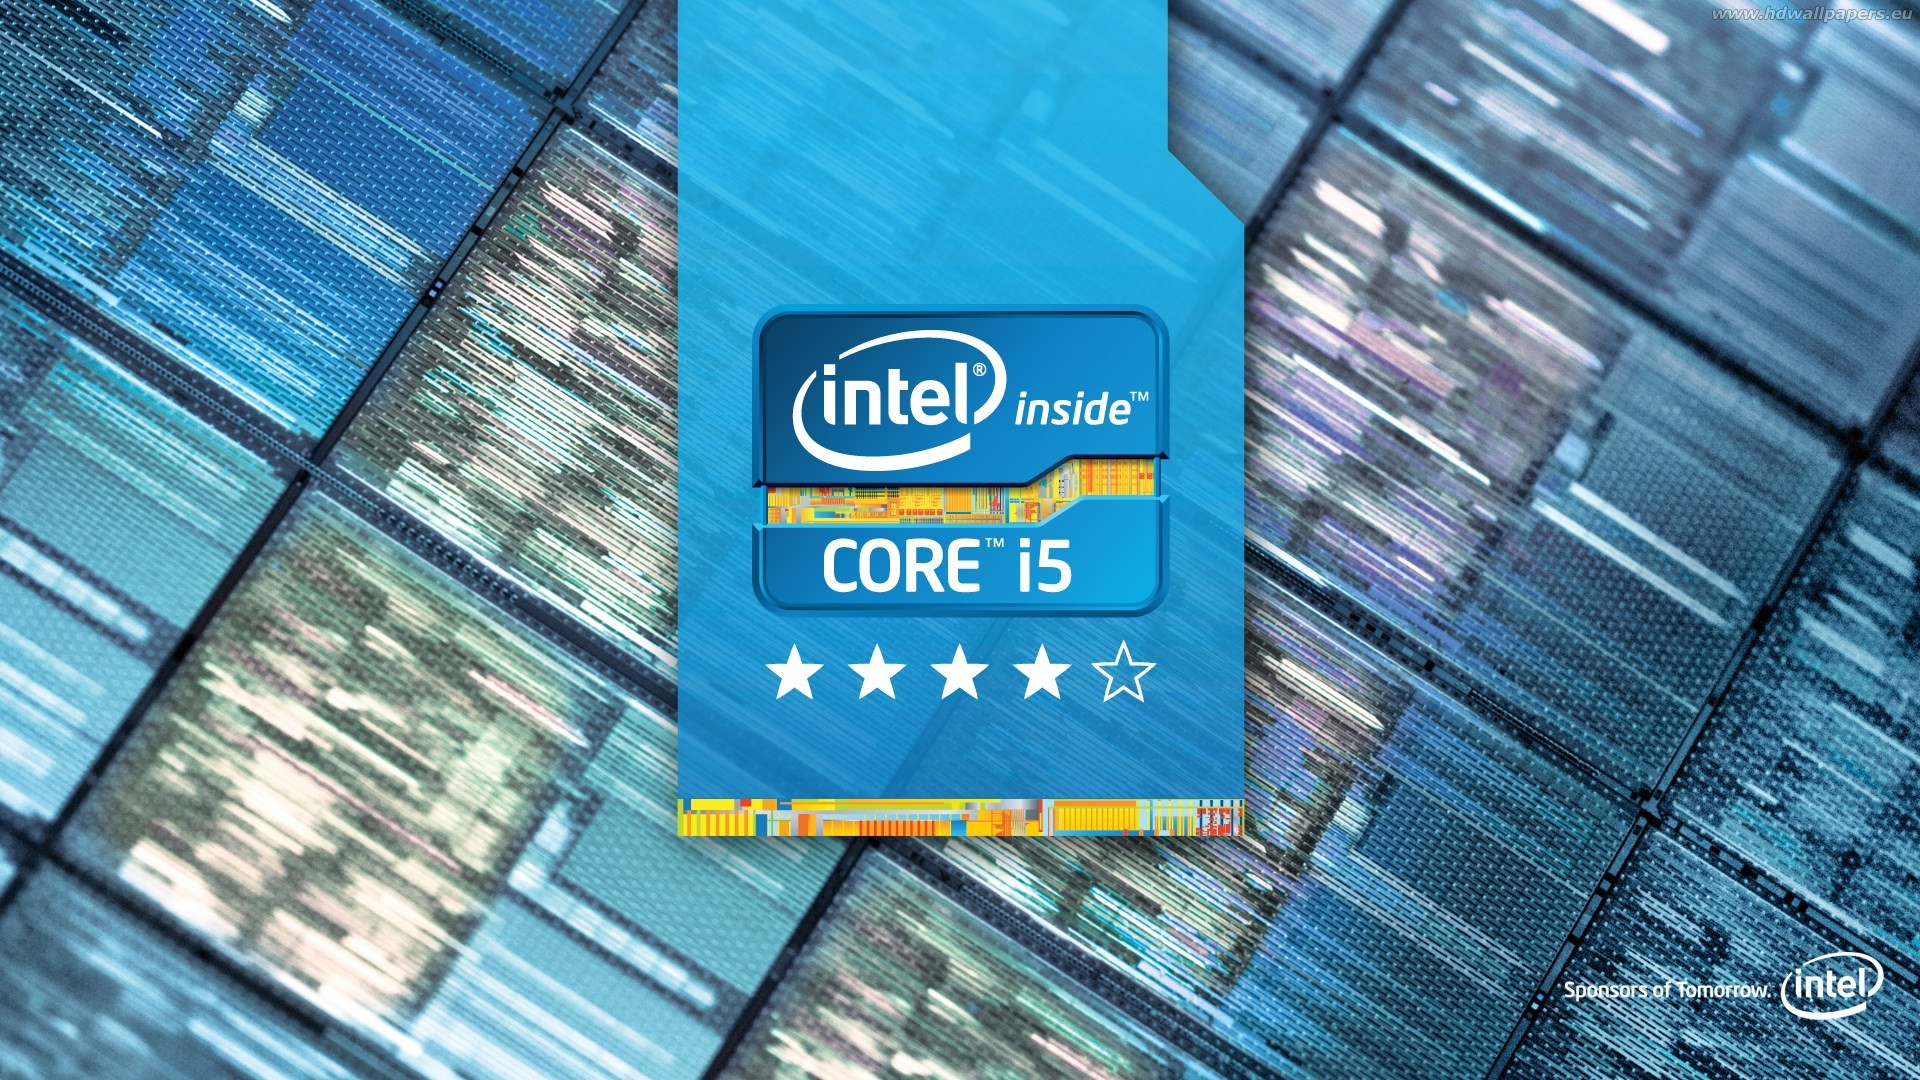 1920x1080 Intel haswell wallpaper x jpg  Intel haswell hd wallpaper 